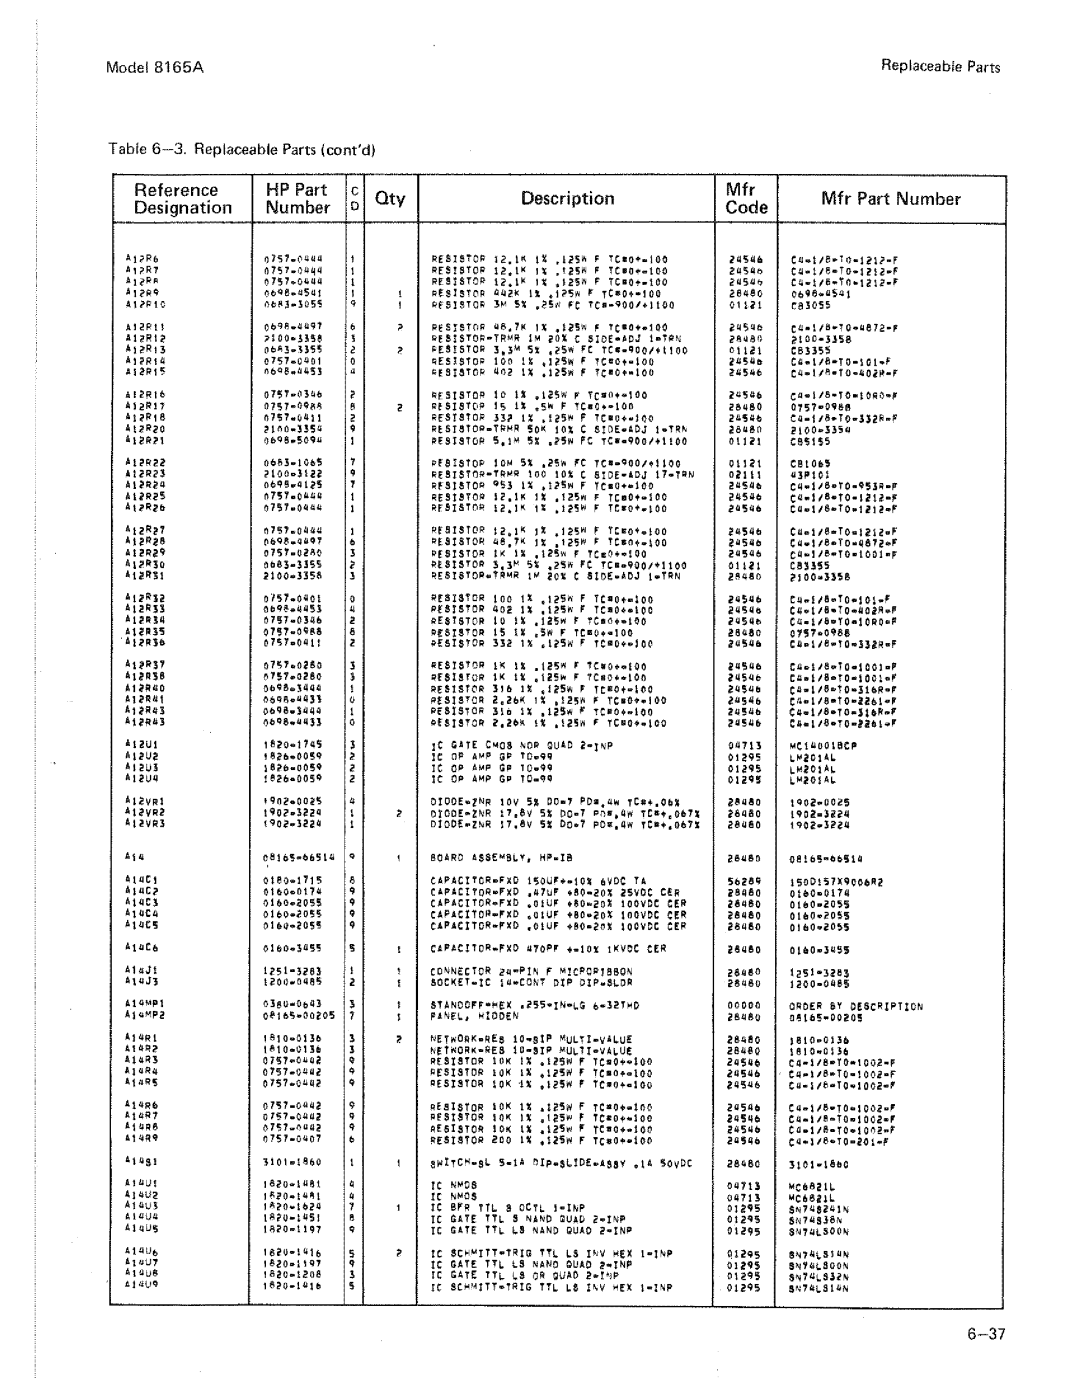 HP 8165A manual 